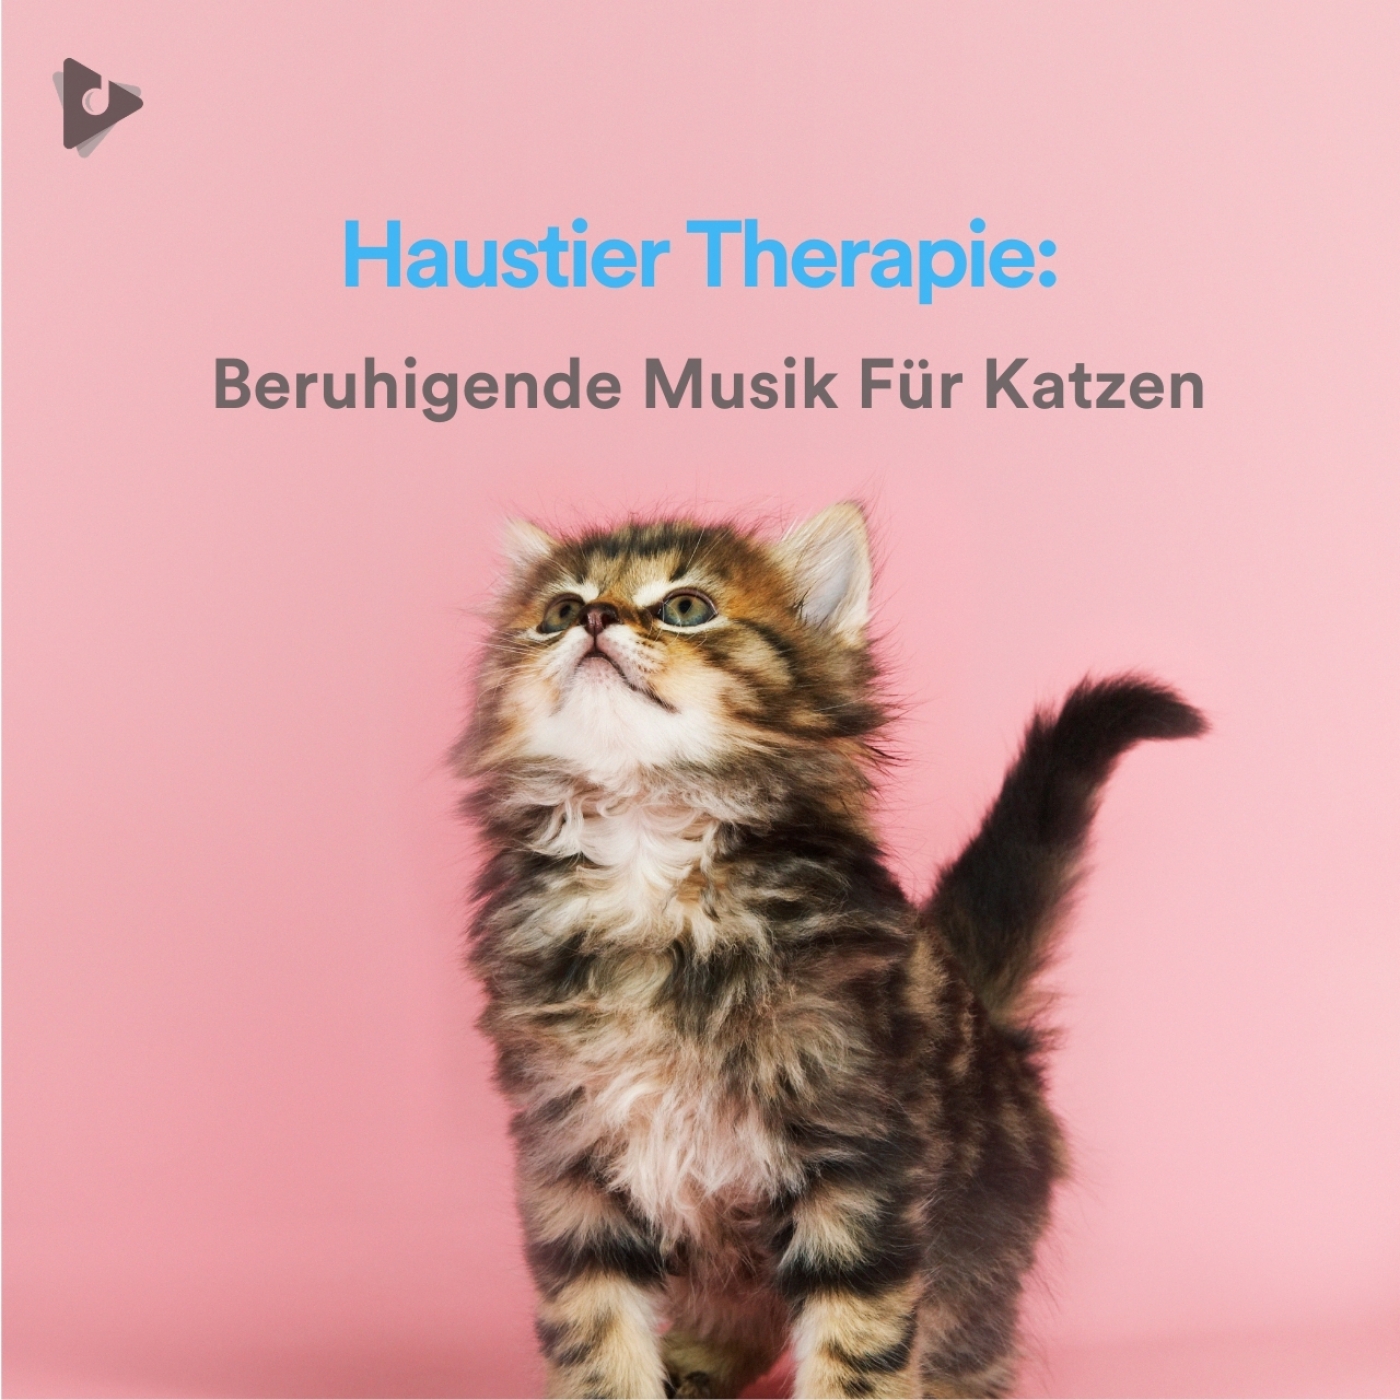 Haustier Therapie: Beruhigende Musik Für Katzen